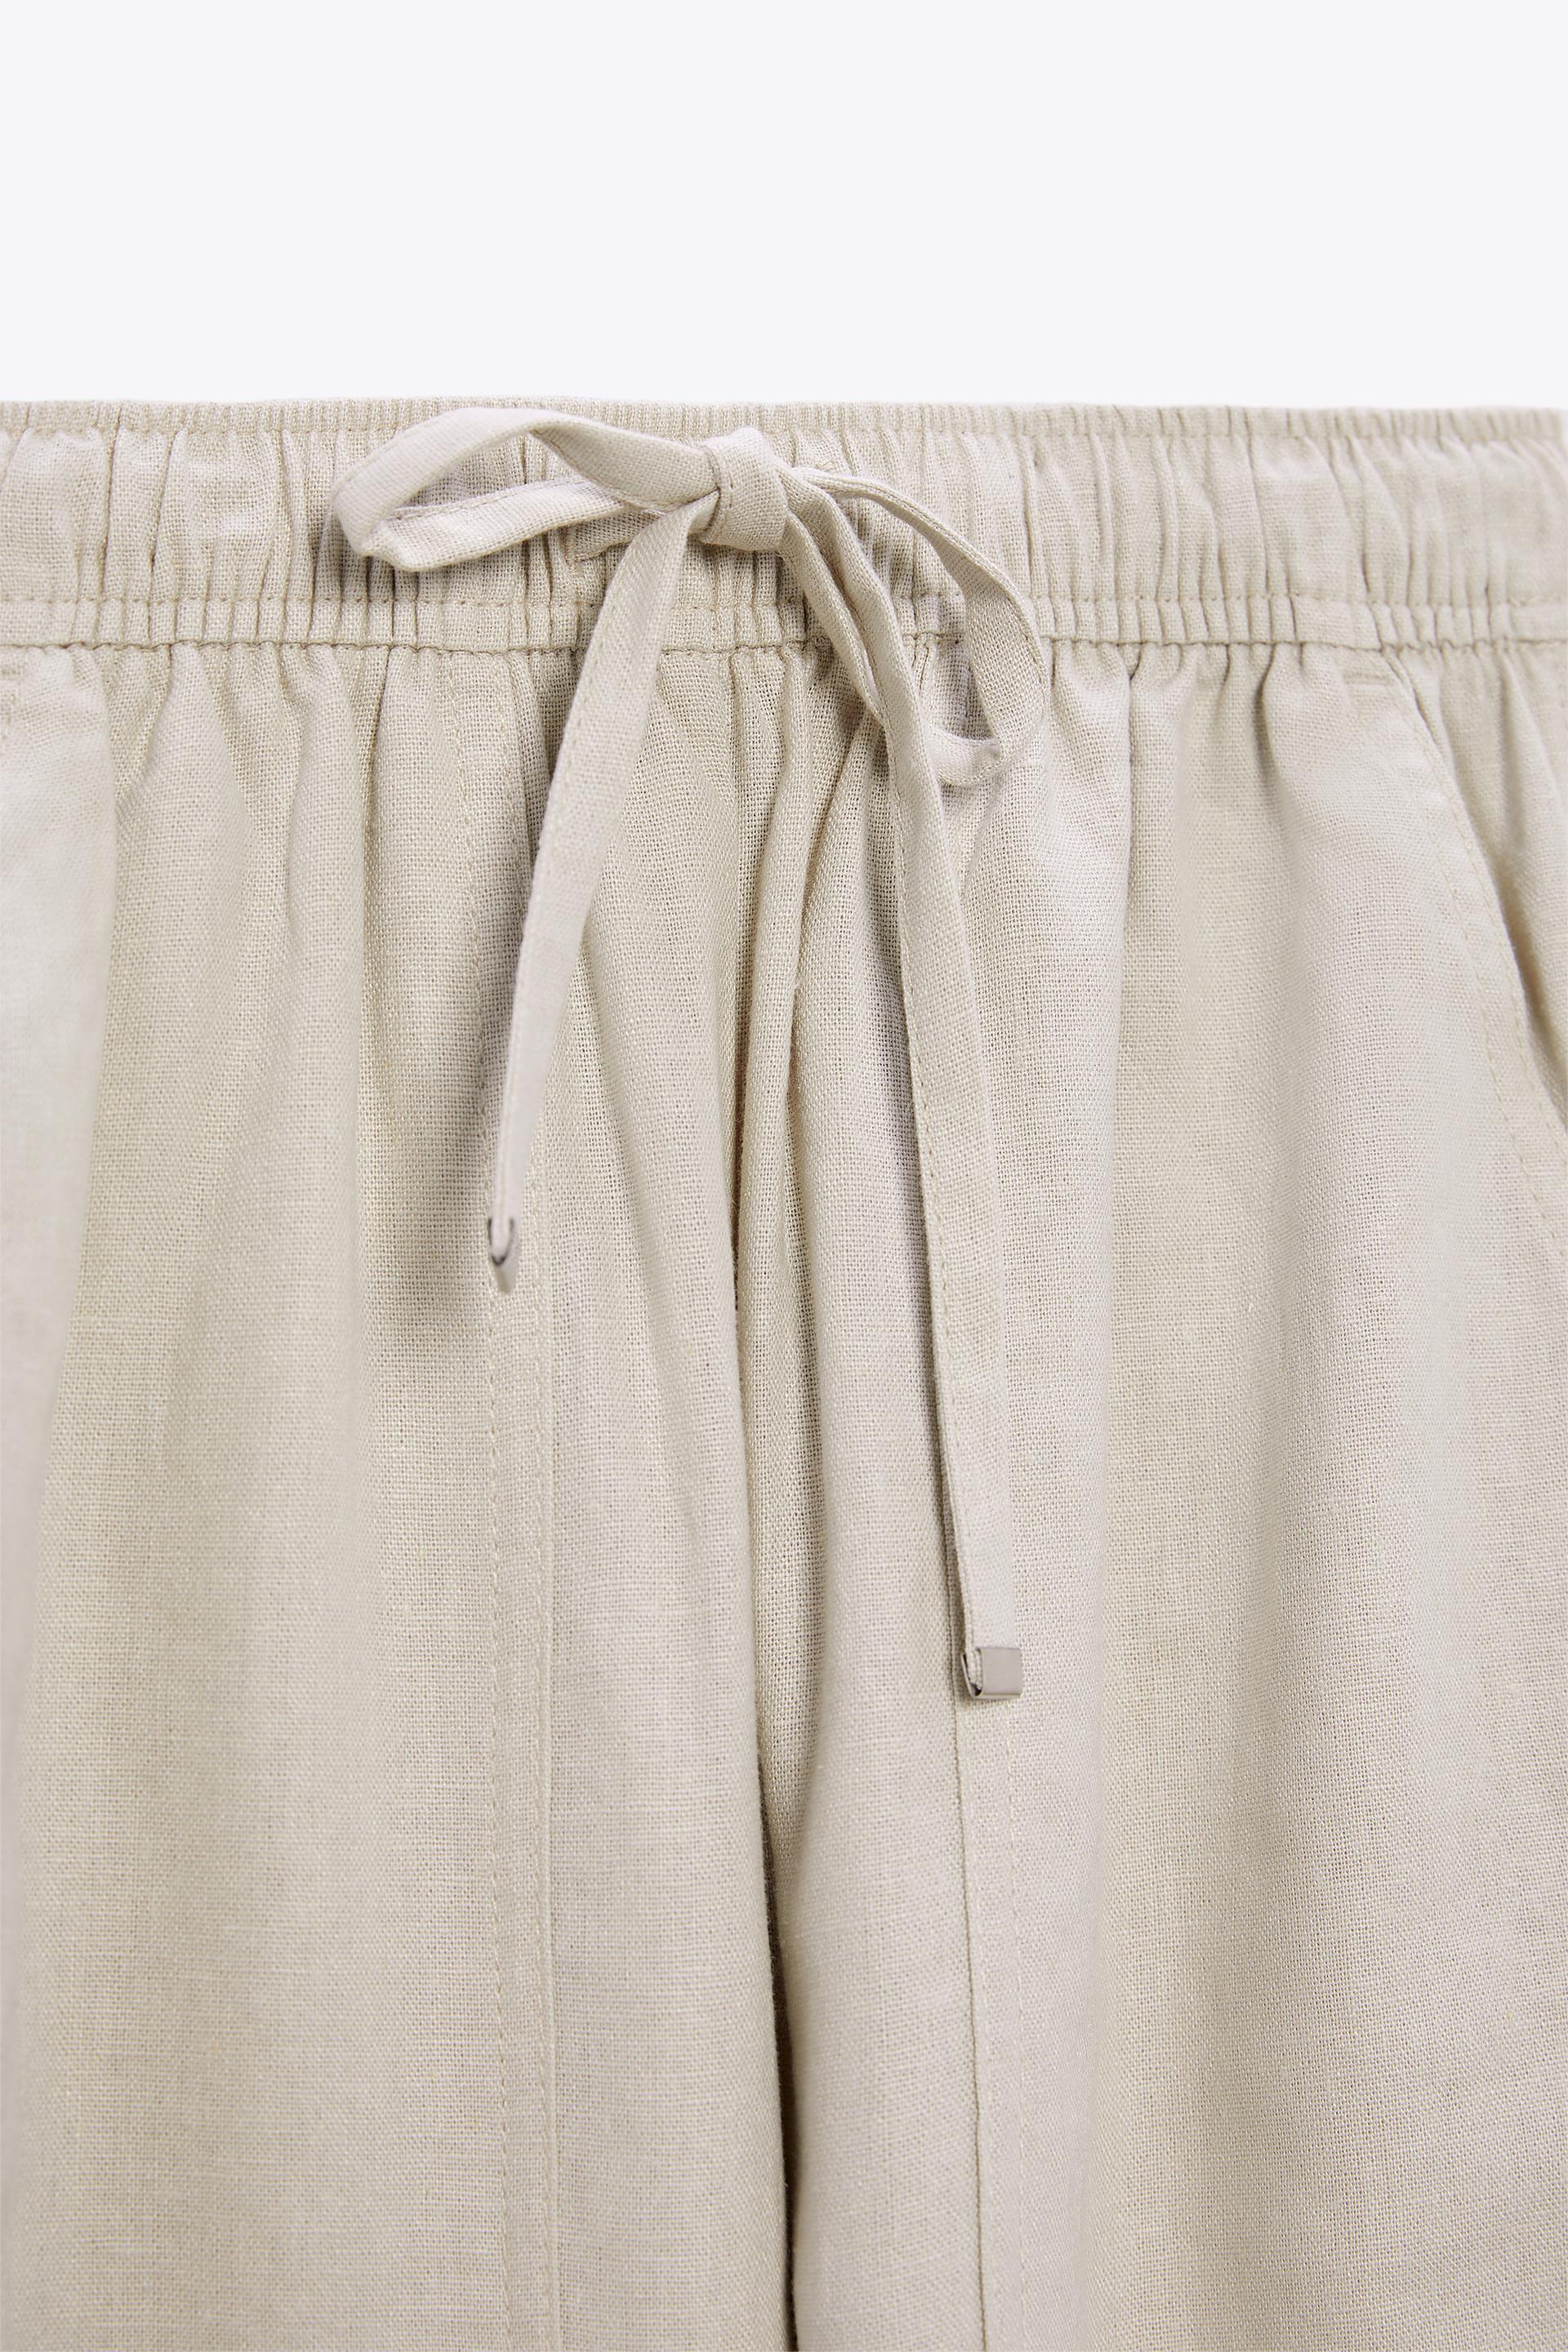 Zara Women's Linen Blend Carrot Fit Trouser Pants - Depop